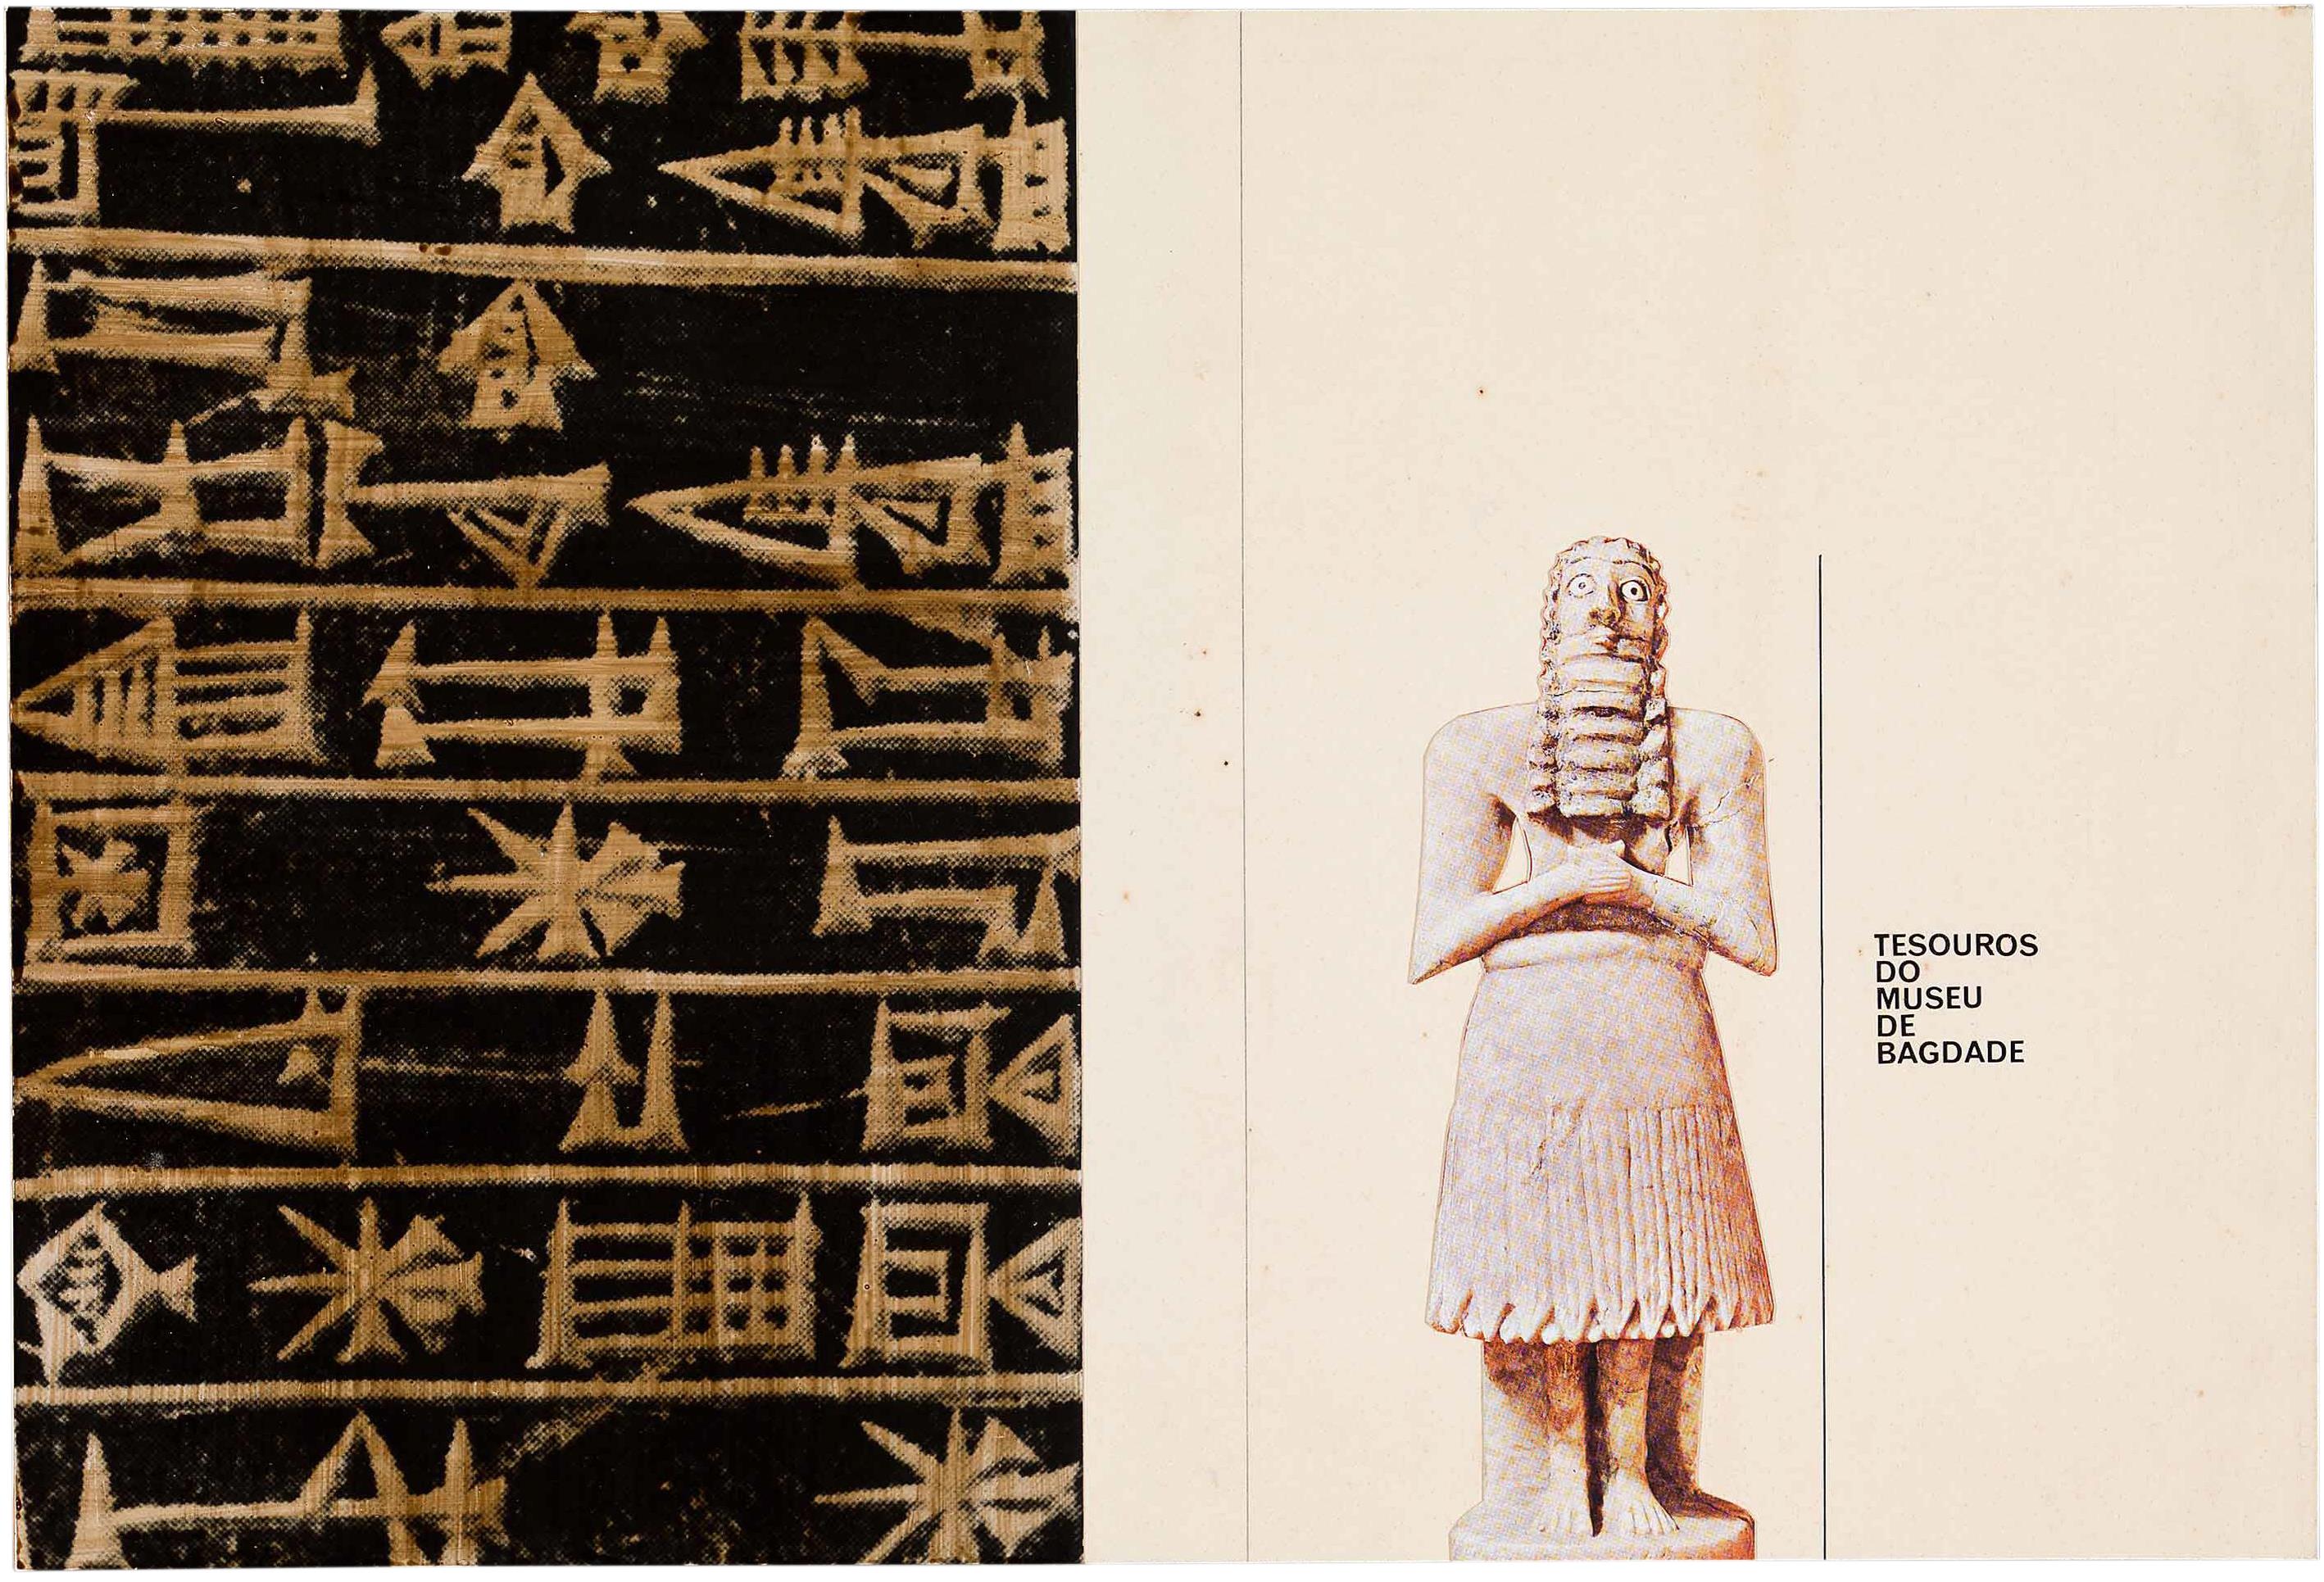 Tesouros do Museu de Bagdade [catálogo]